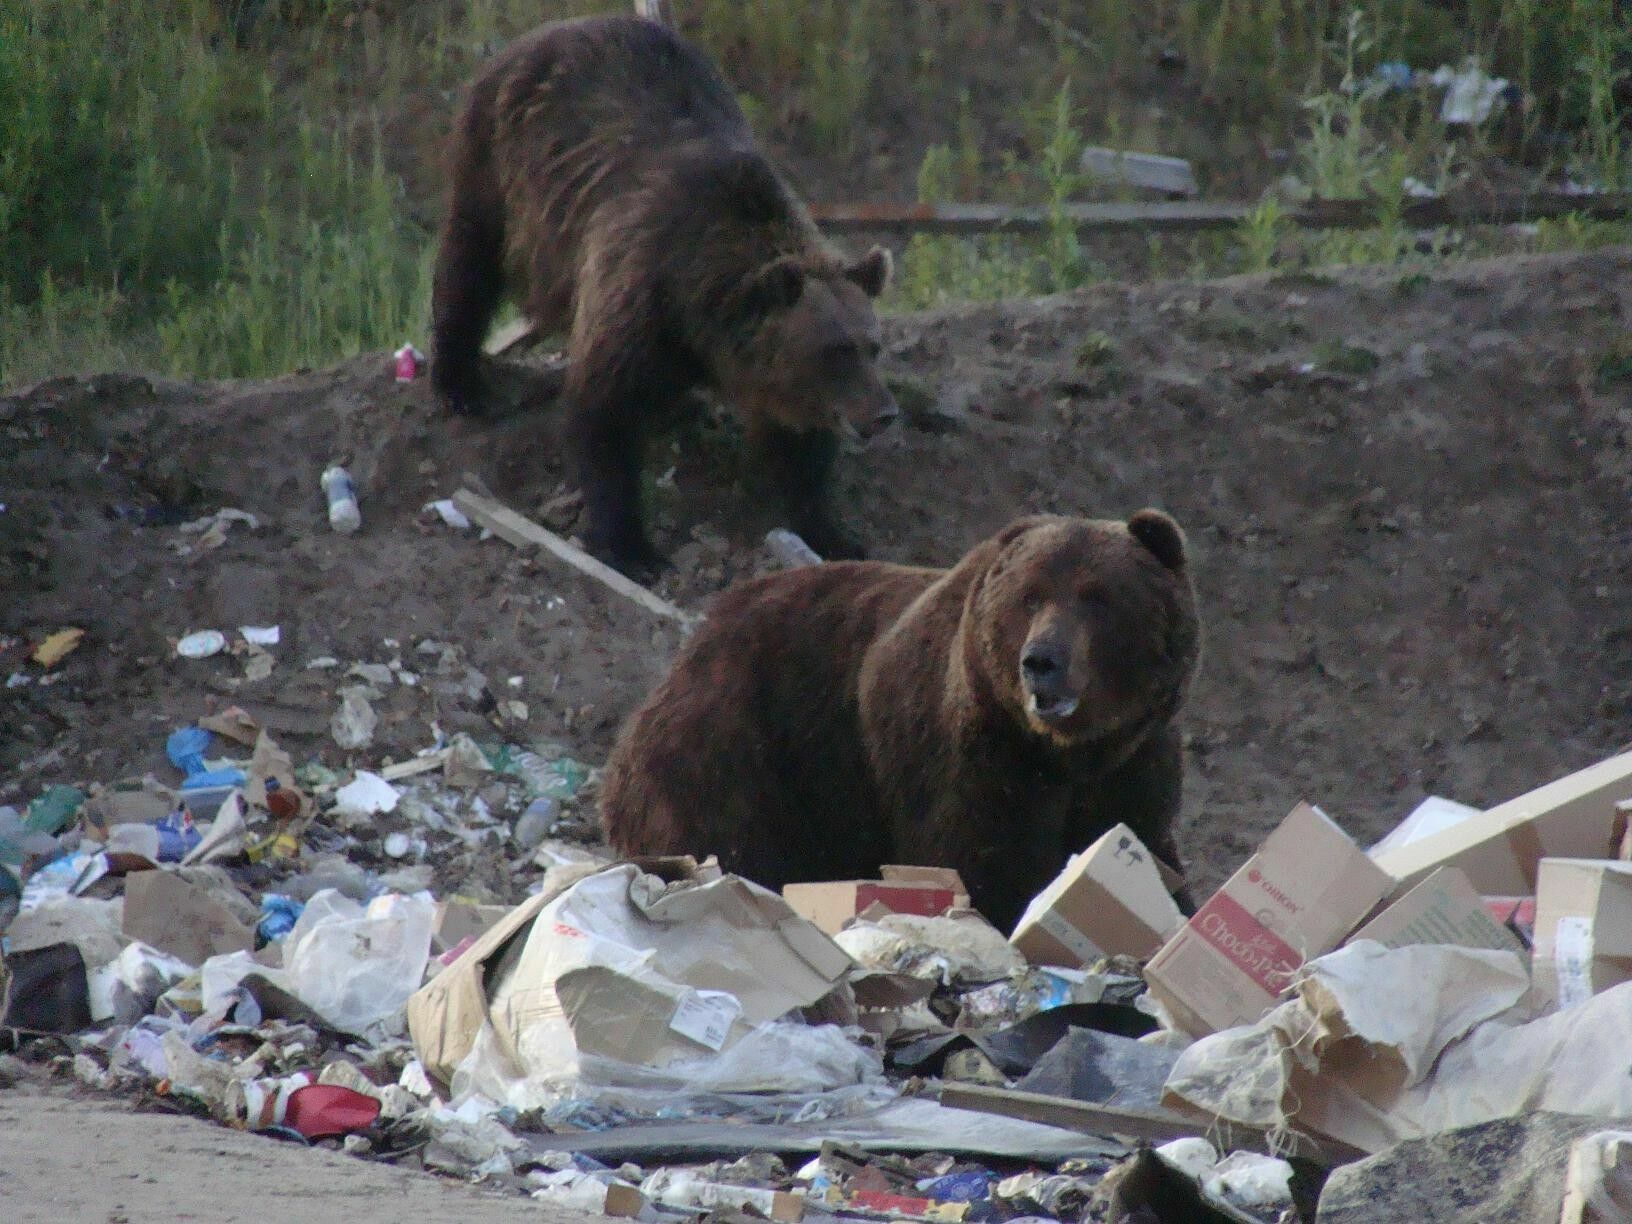 Если в каком-то месте есть не закрытая мусорная свалка с пищевыми отходами, медведь начинает считать её своей собственностью и атаковать всех приближающихся к ней людей, причём атаки могут быть со смертельным исходом.